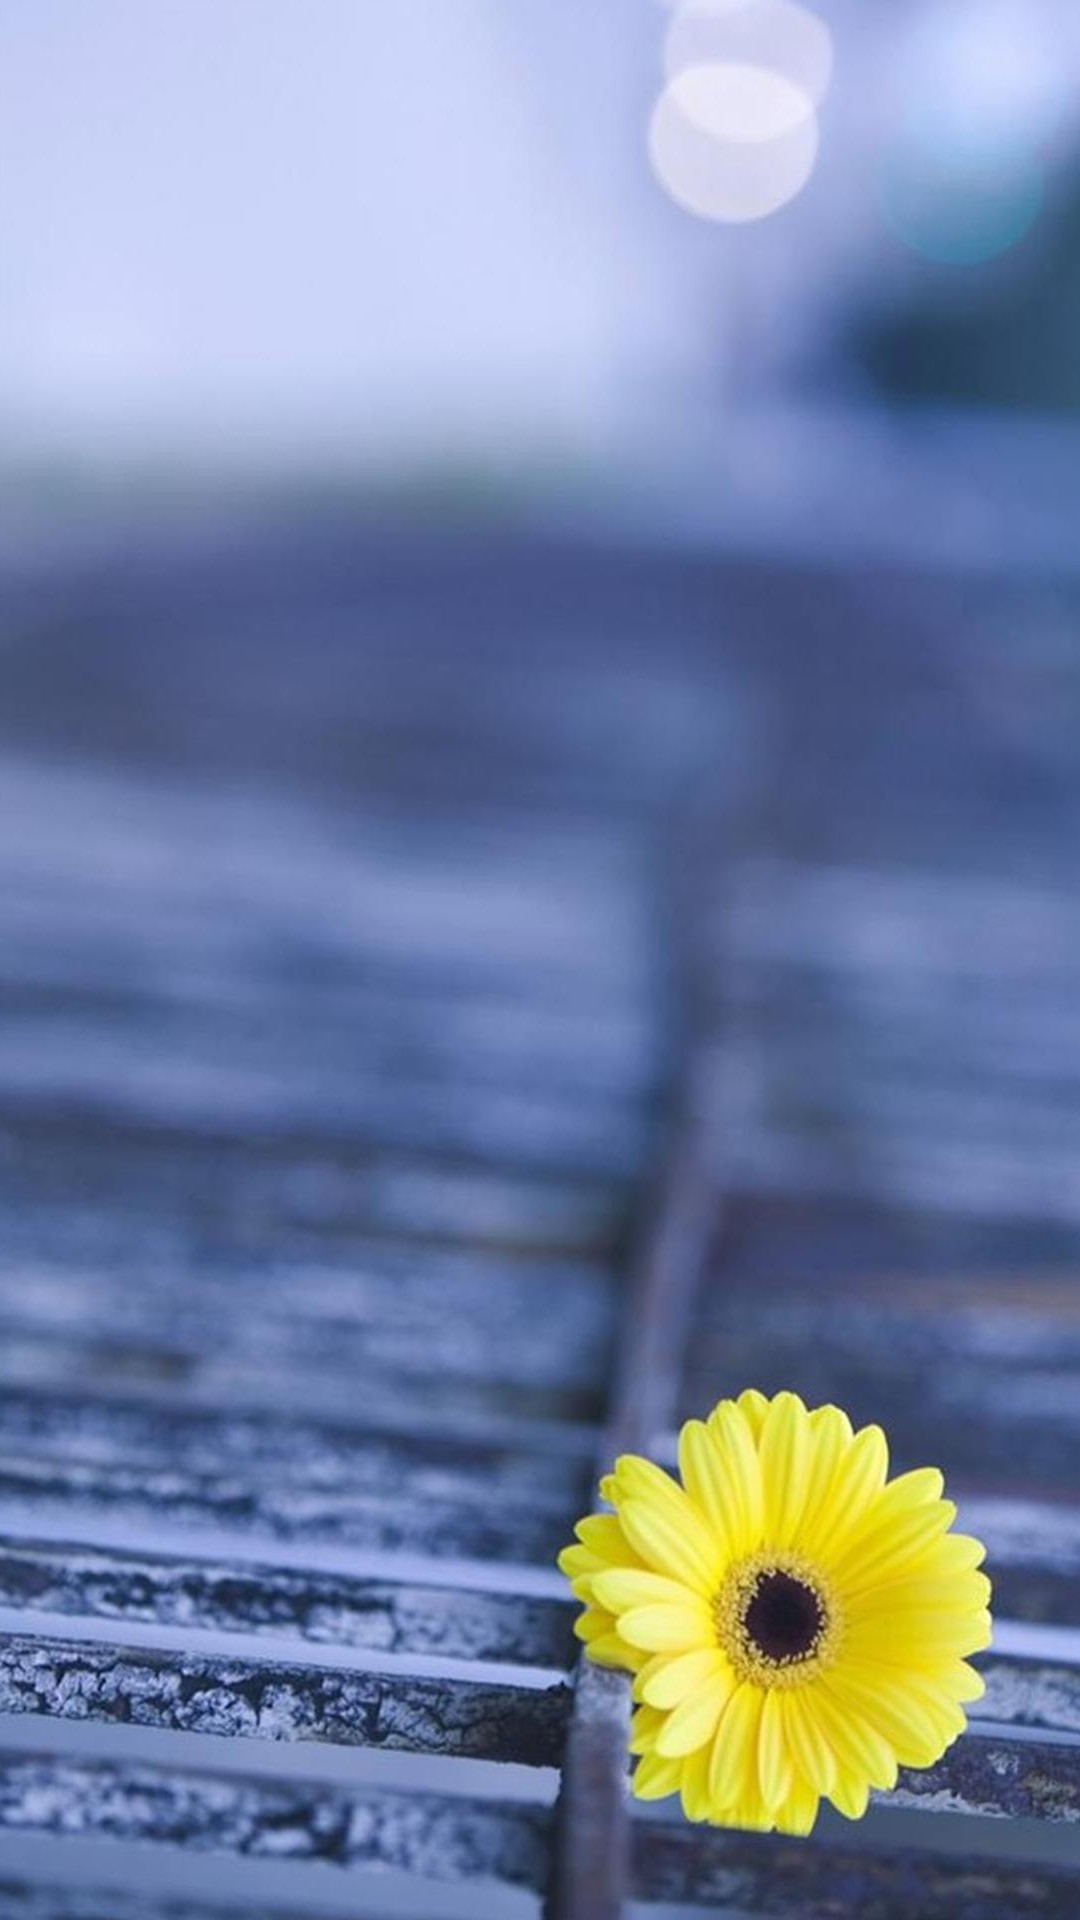 hd flower wallpaper für handys kostenloser download,natur,gelb,blume,blütenblatt,himmel